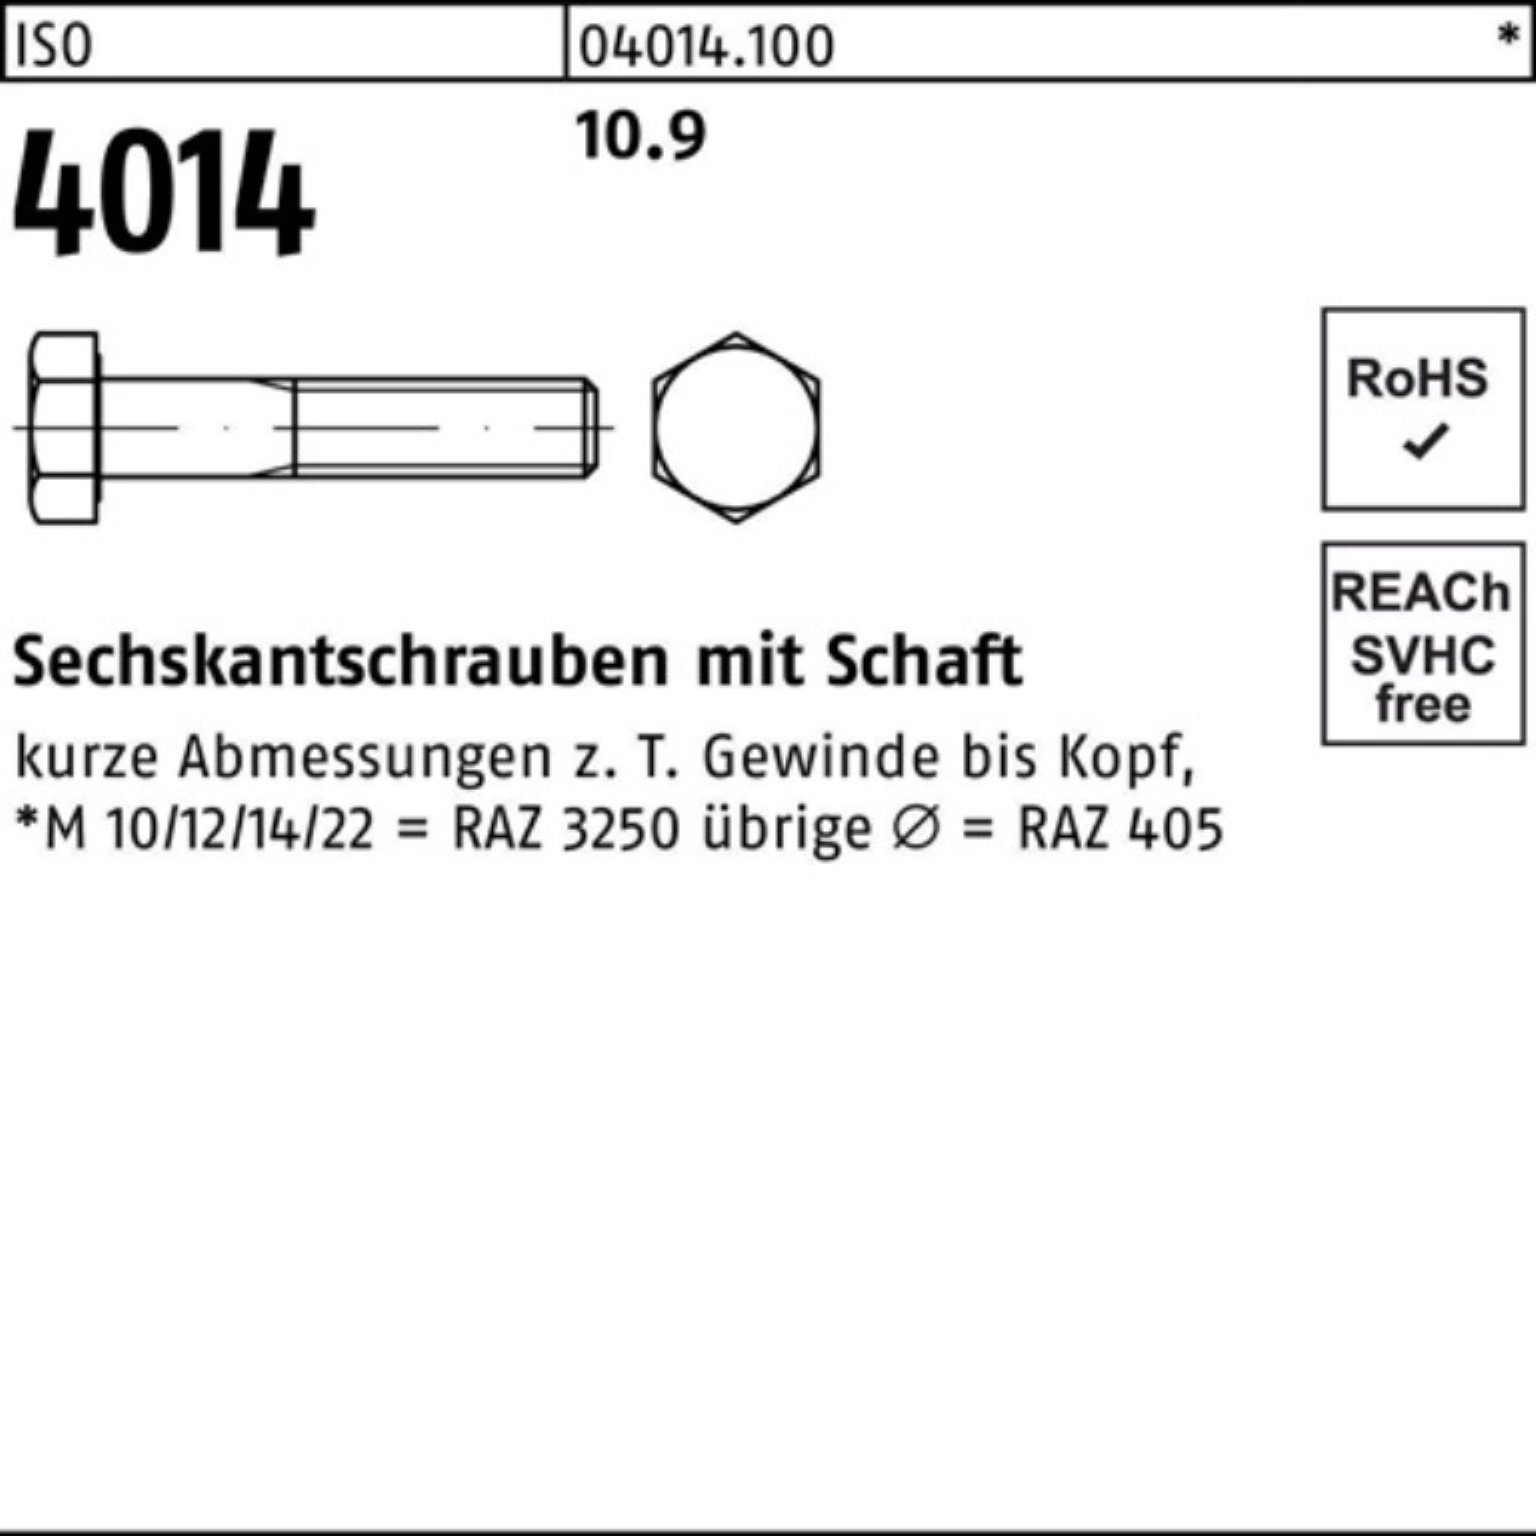 4014 210 M27x 100er Sechskantschraube Pack 1 Sechskantschraube ISO Bufab 10.9 IS Schaft Stück